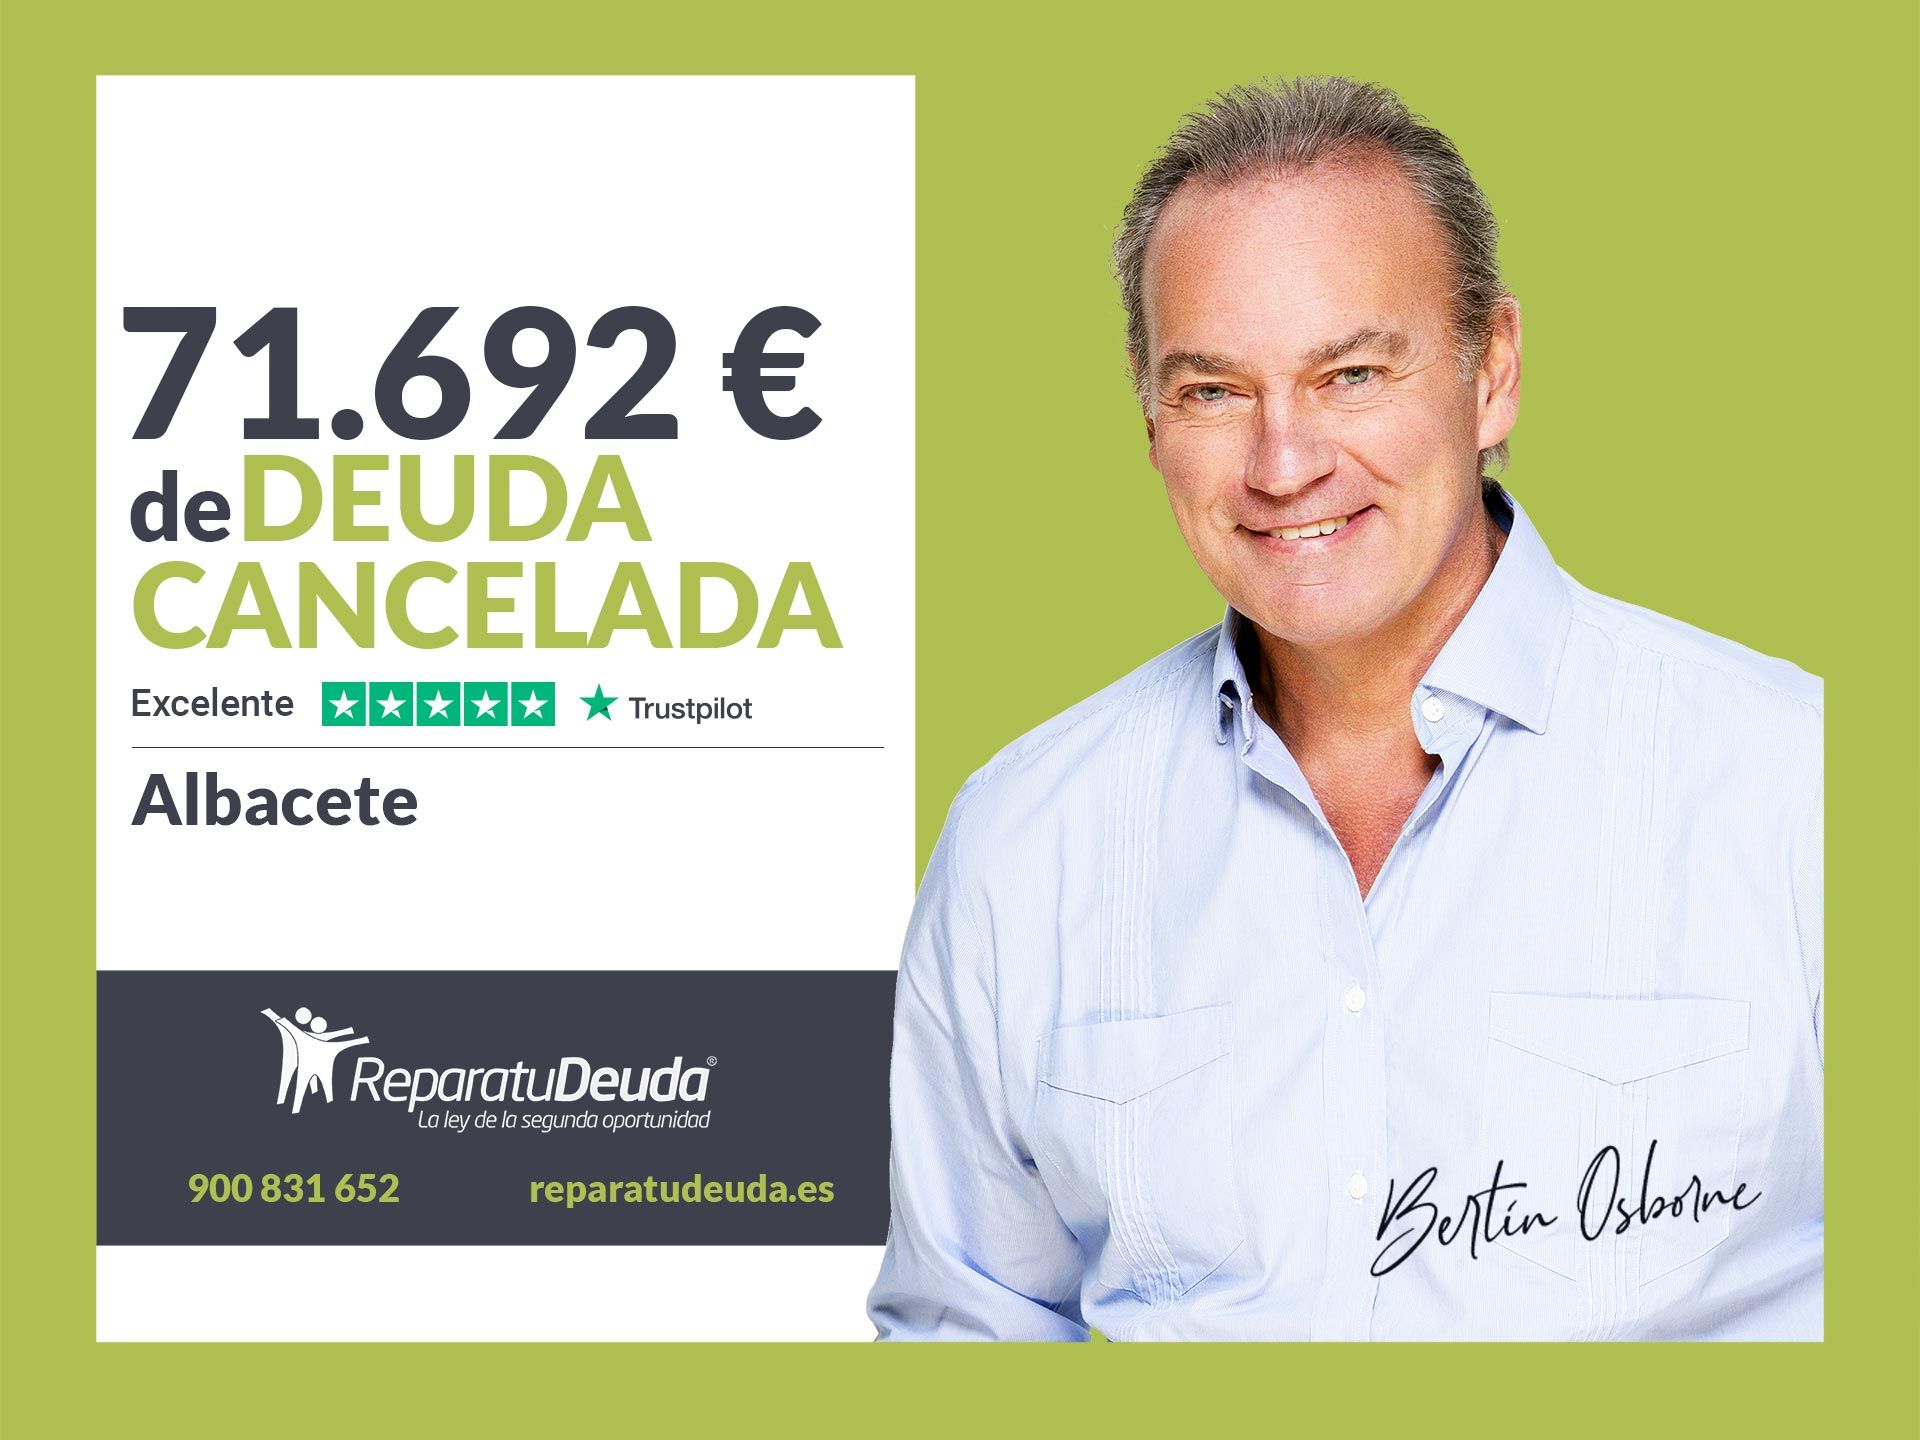 Repara tu Deuda cancela 71.692? en Albacete (Castilla-La Mancha) con la Ley de la Segunda Oportunidad